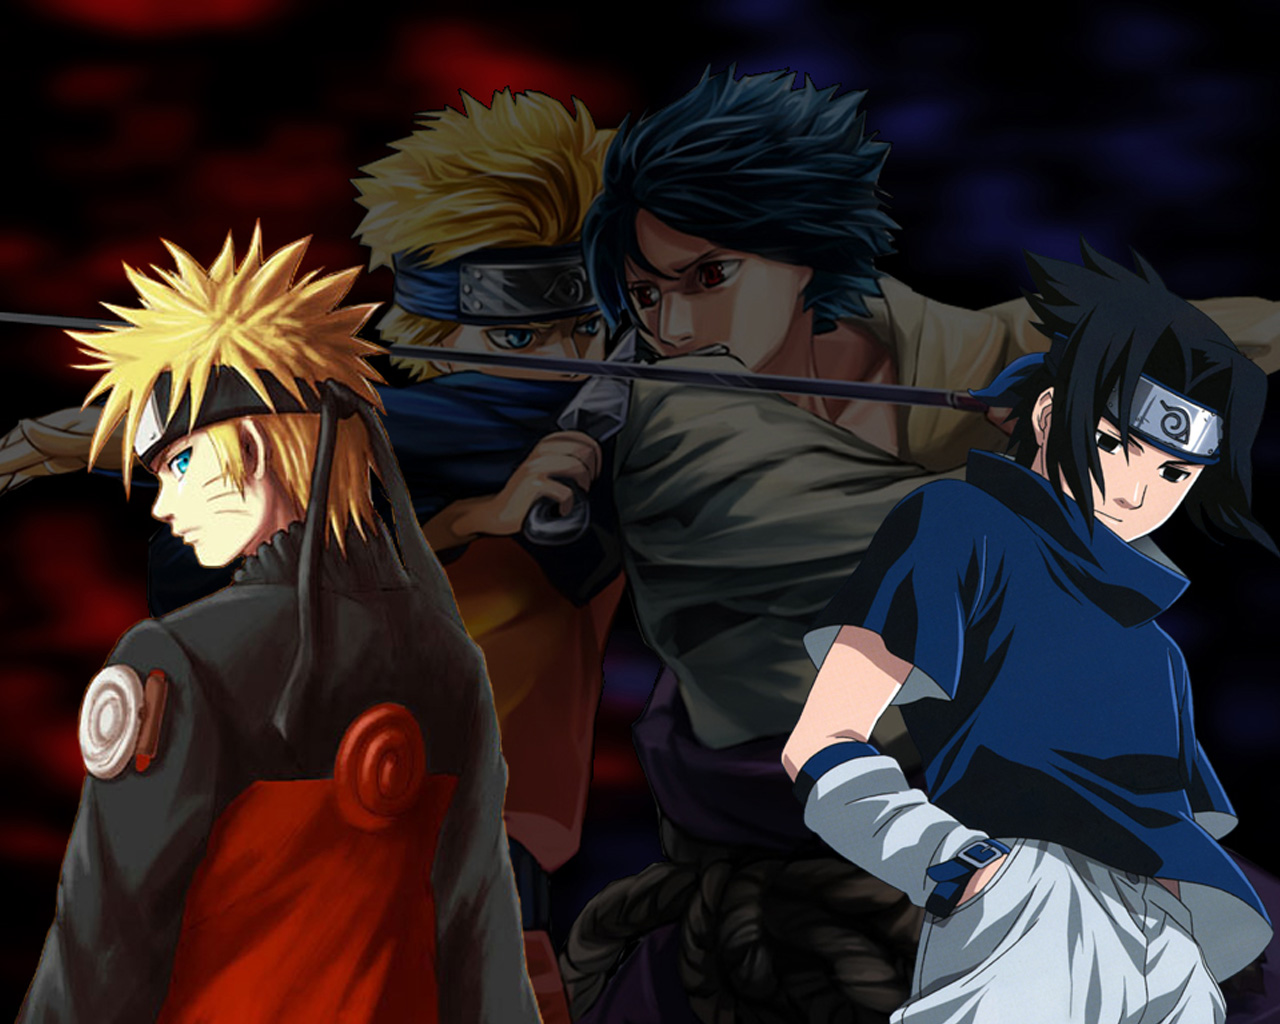 WallpapersKu Naruto vs Sasuke Wallpapers 1280x1024